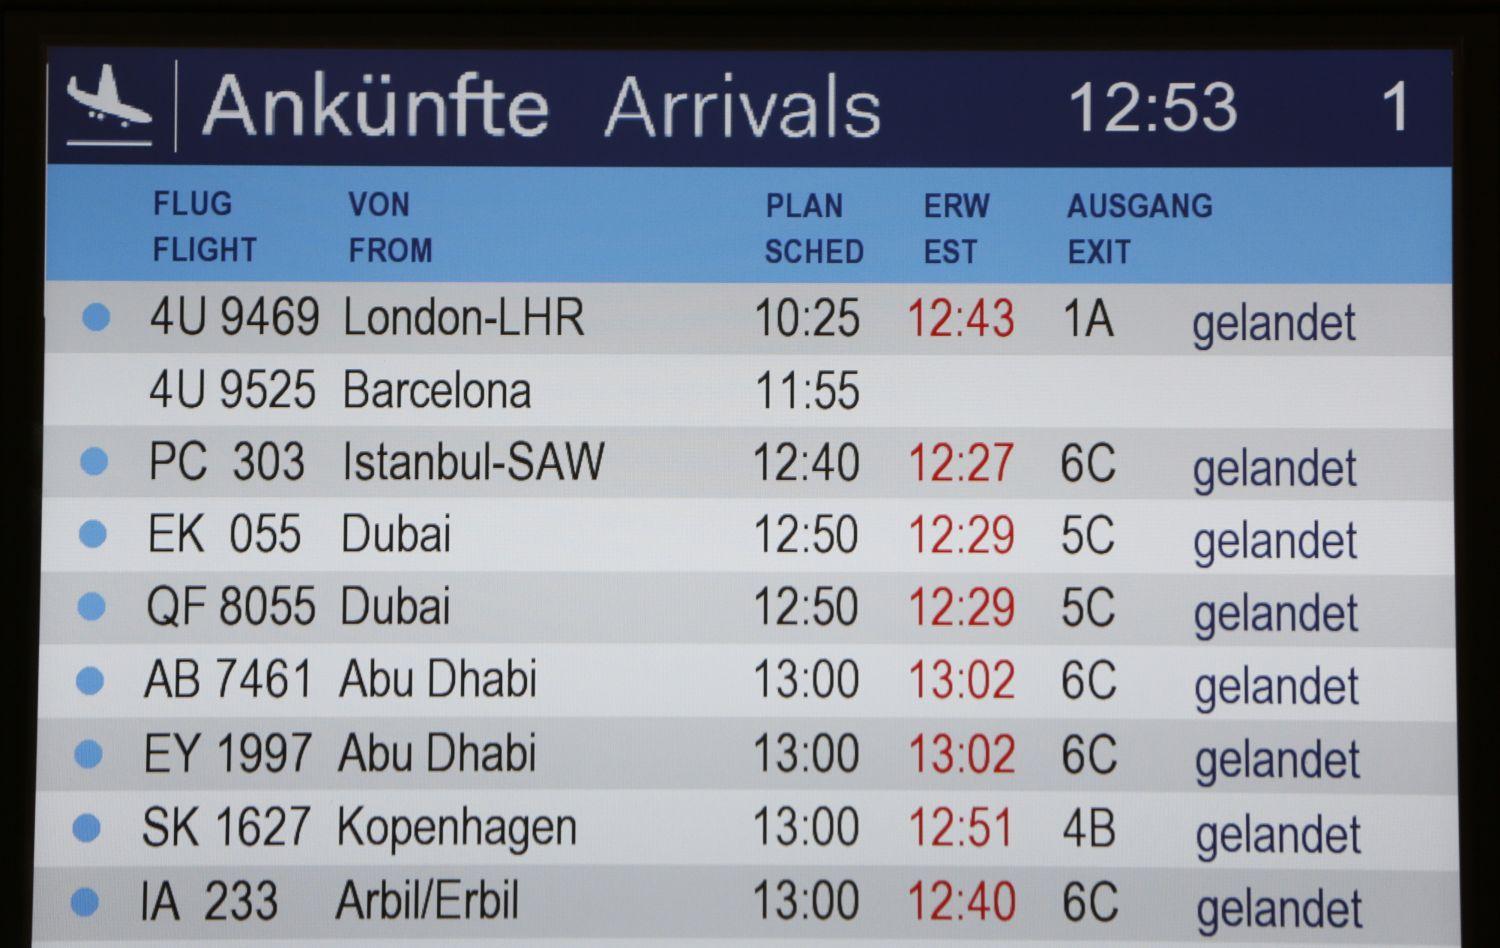 Amikor az információ hiánya a legdrámaibb. Hiányzik a 4U 9525 járat érkezési időpontja a düsseldorfi reptér járatinformációs táblájáról